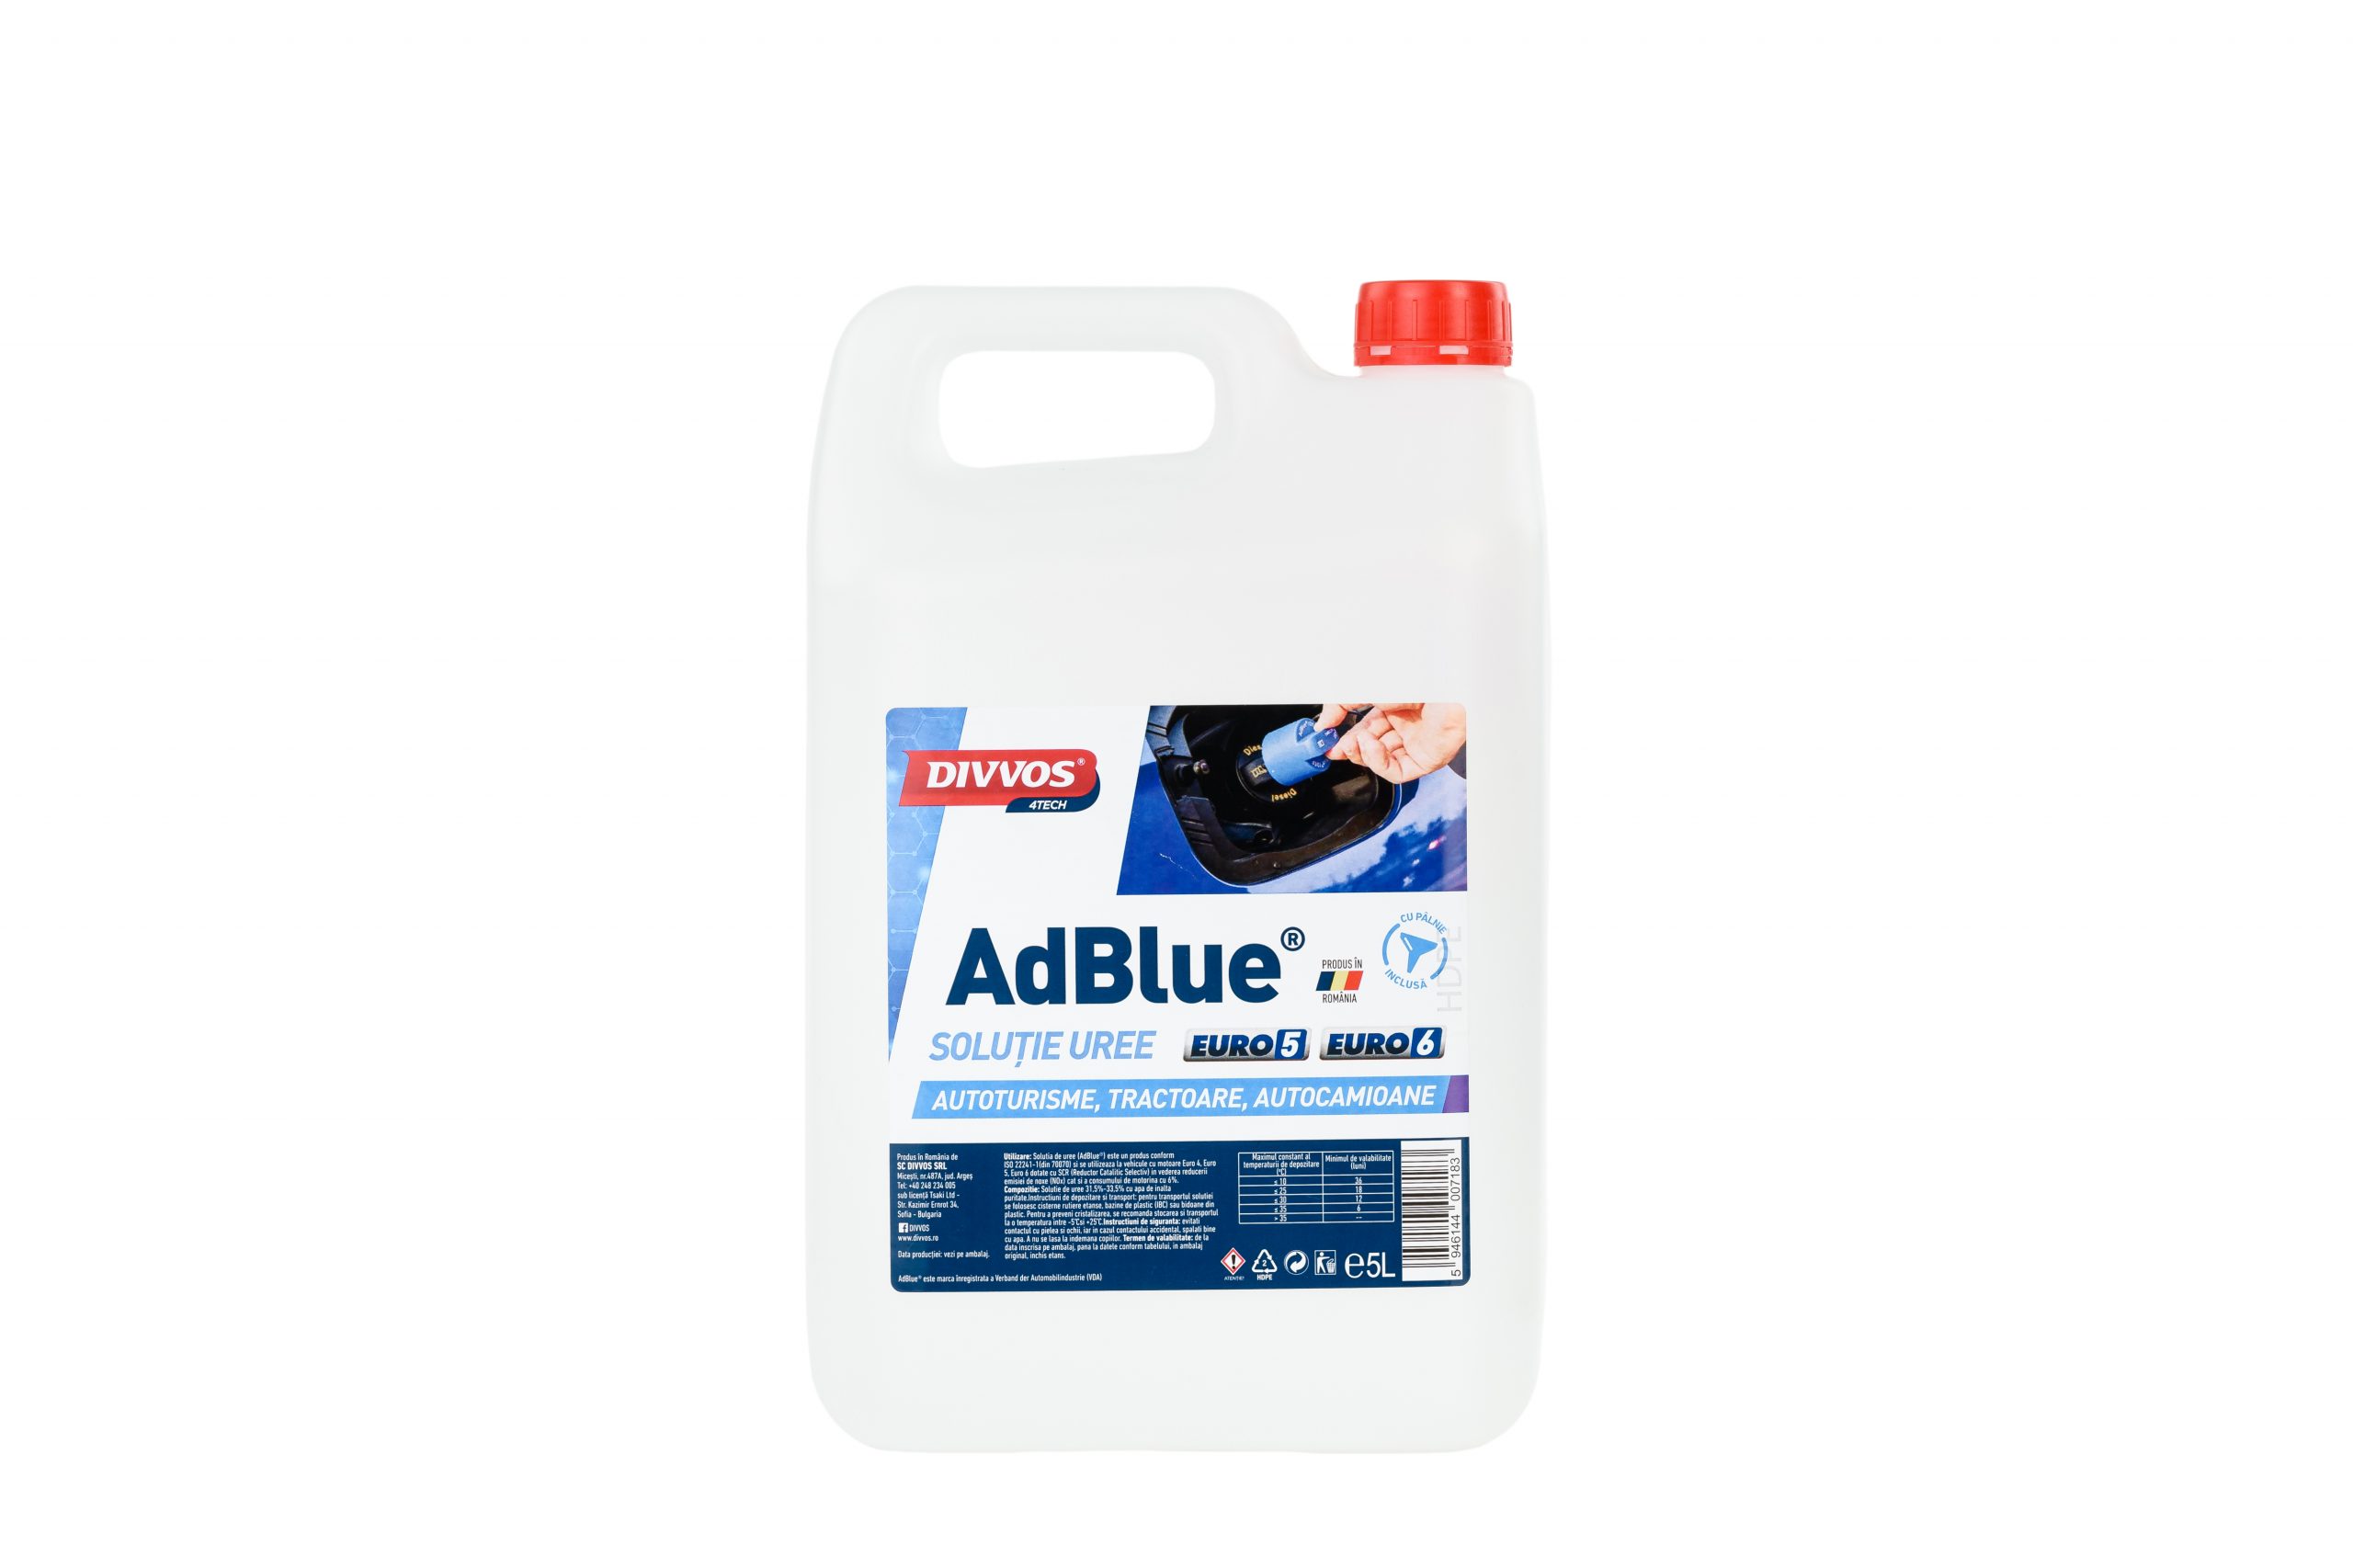 AdBlue 5L